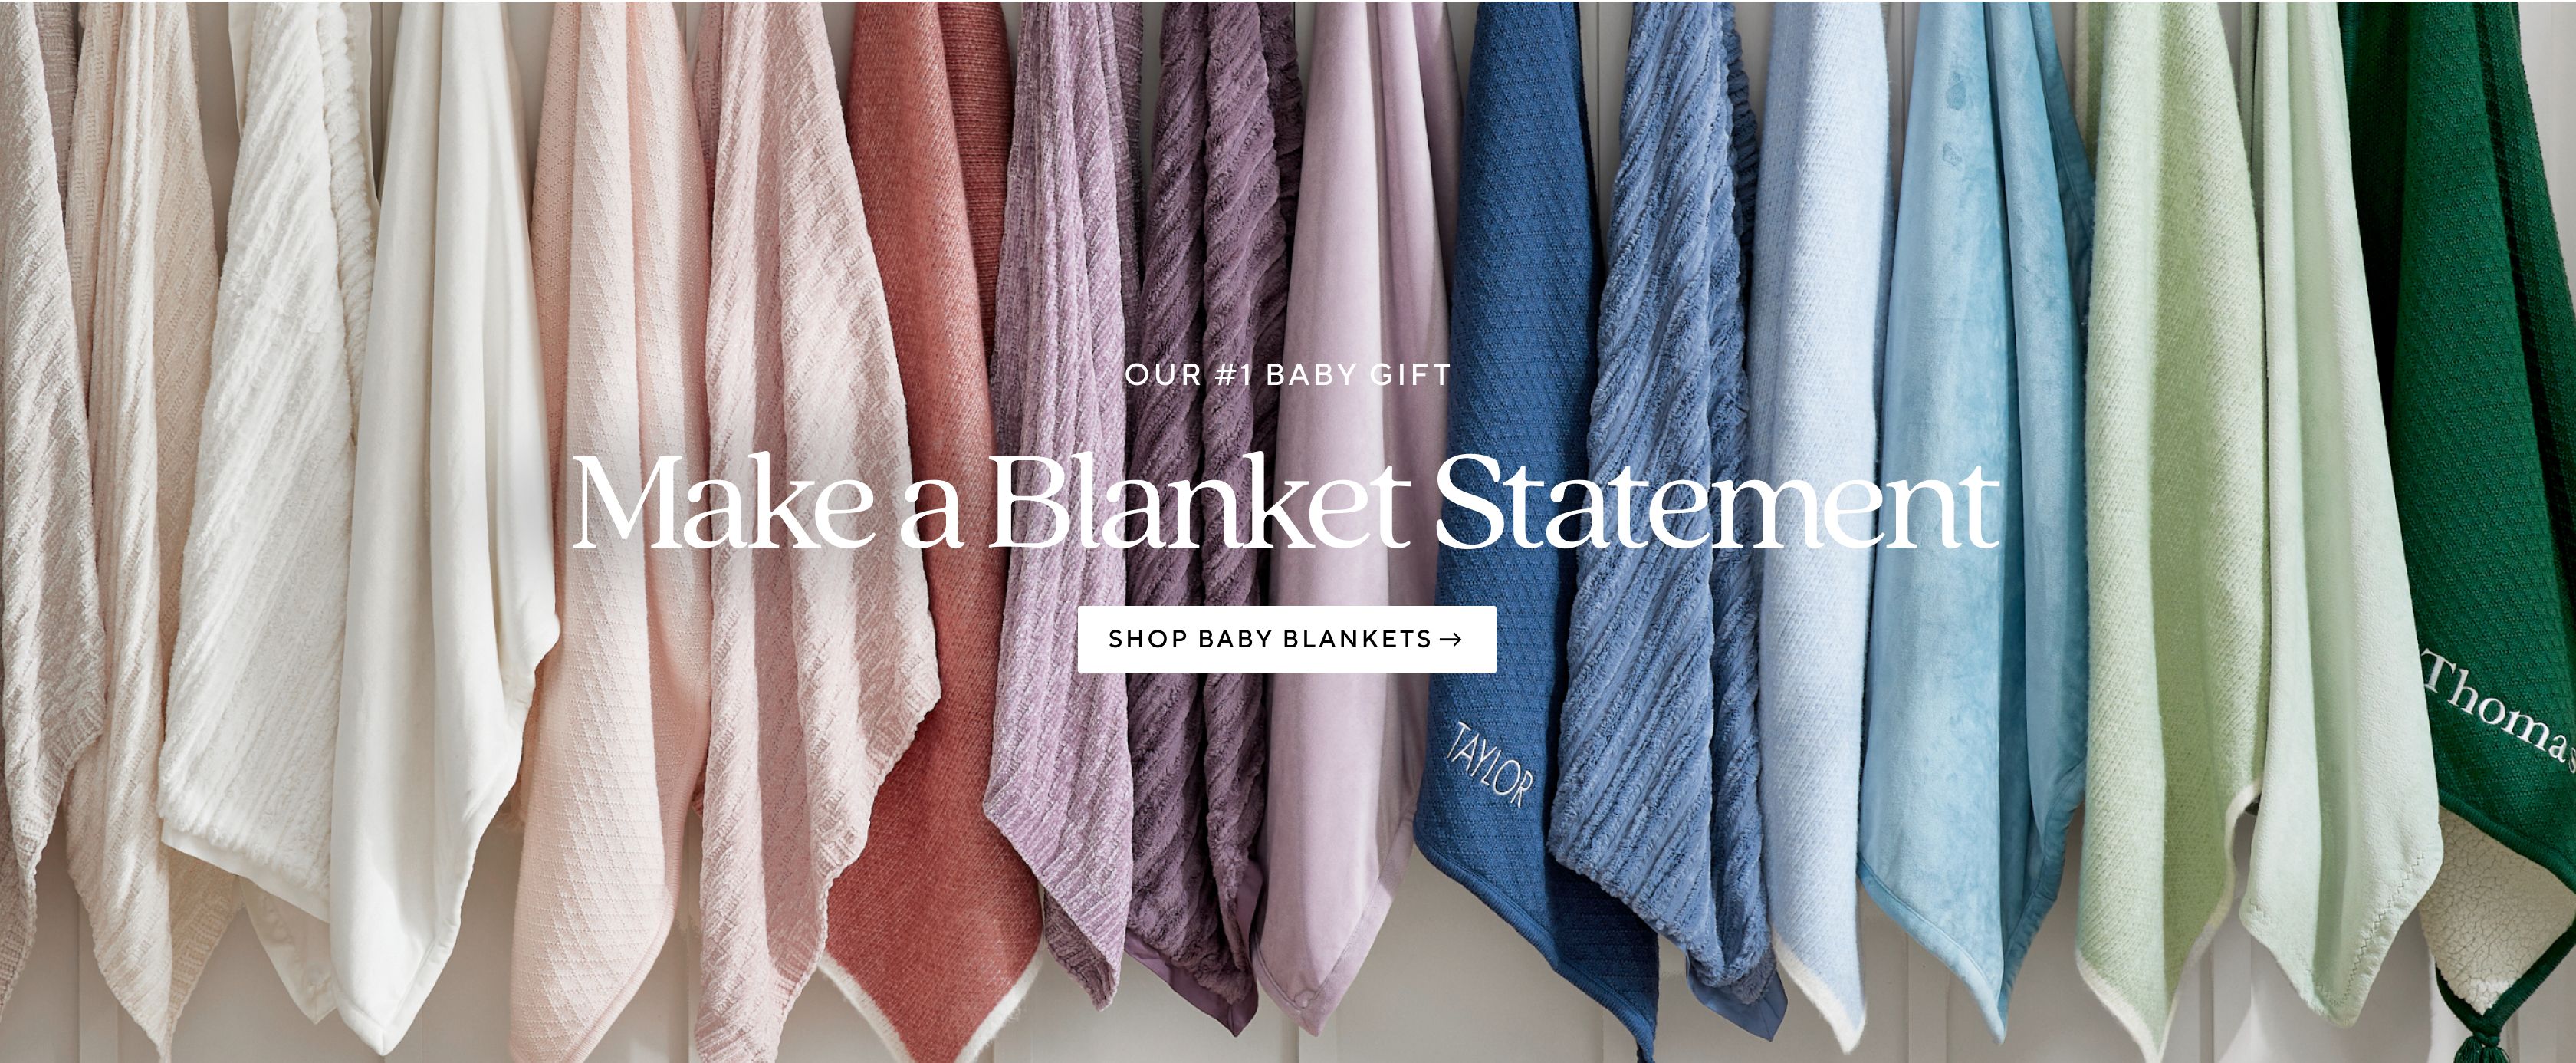 Make a Blanket Statement